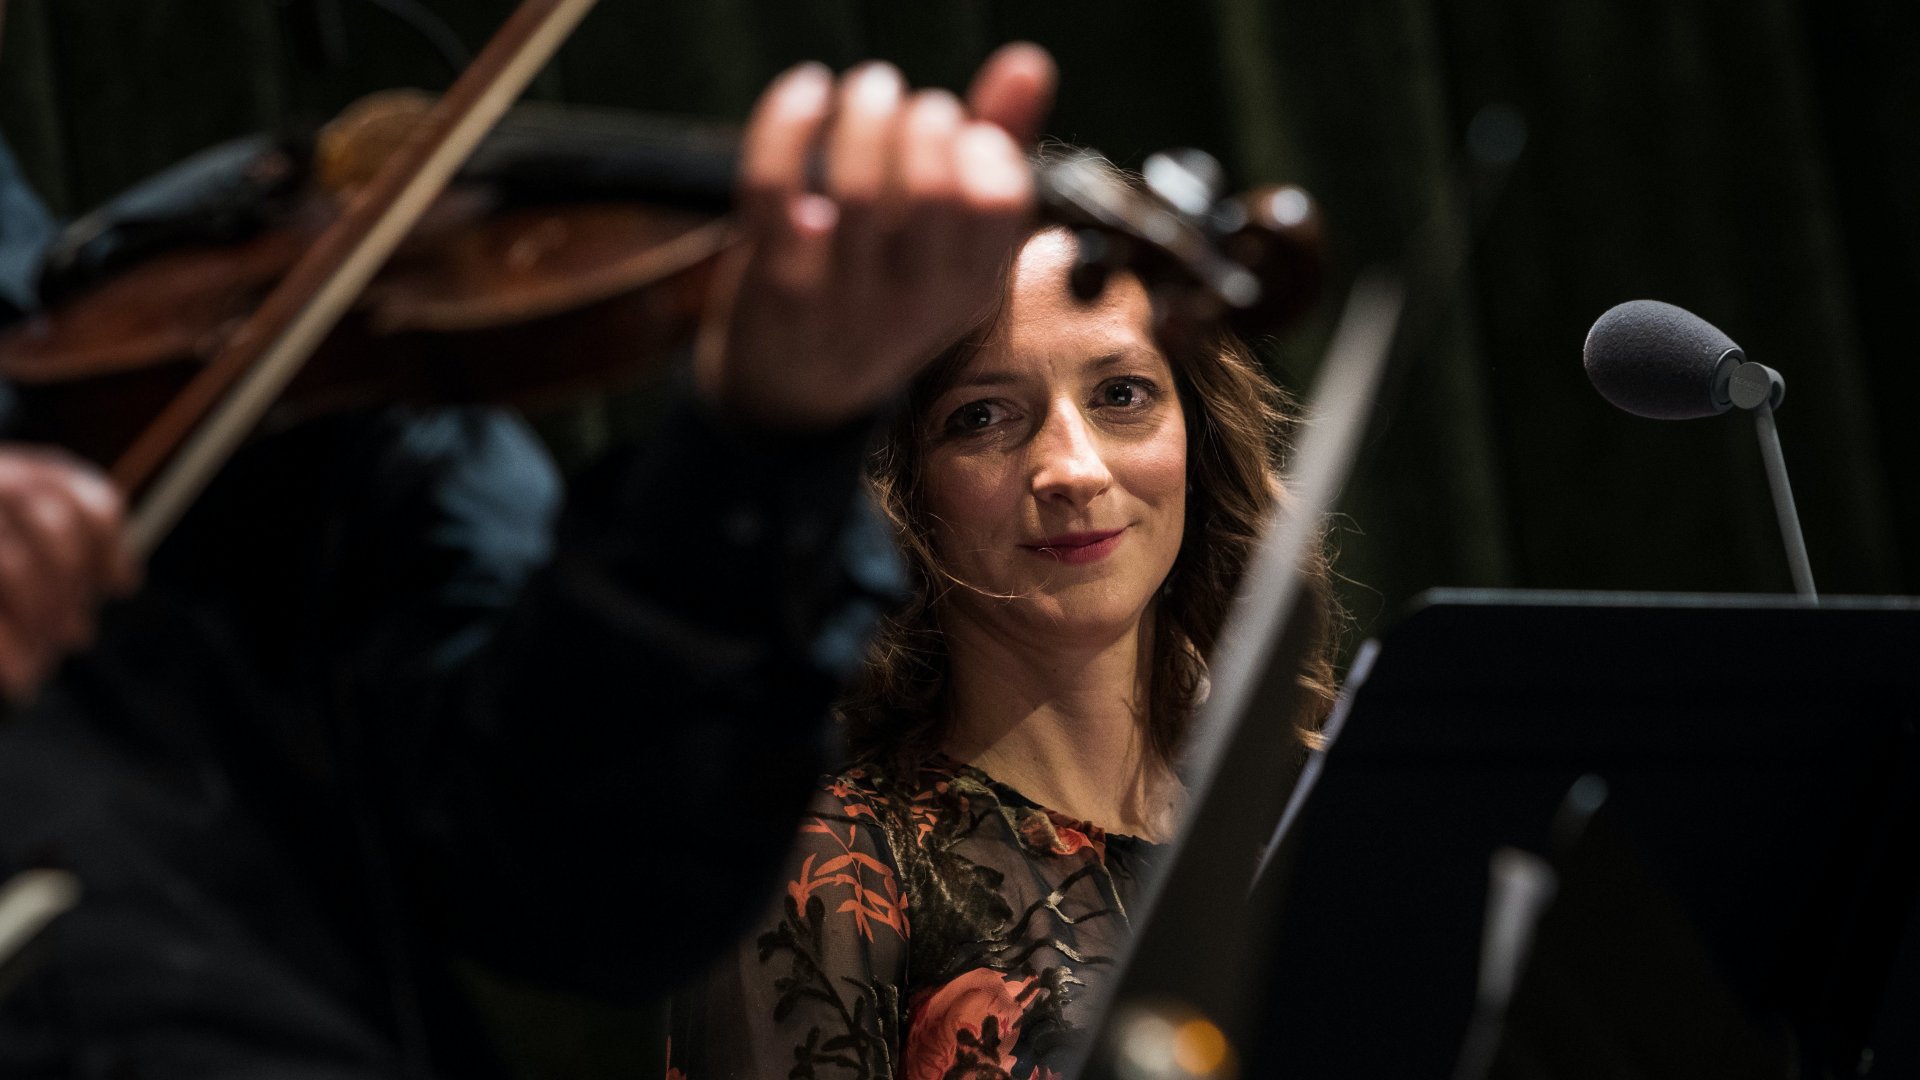 Szalóki Ági énekesnõ a Zeneakadémián adott koncertjén, ahol átvette a Liszt Ferenc-díjat 2017. november 15-én